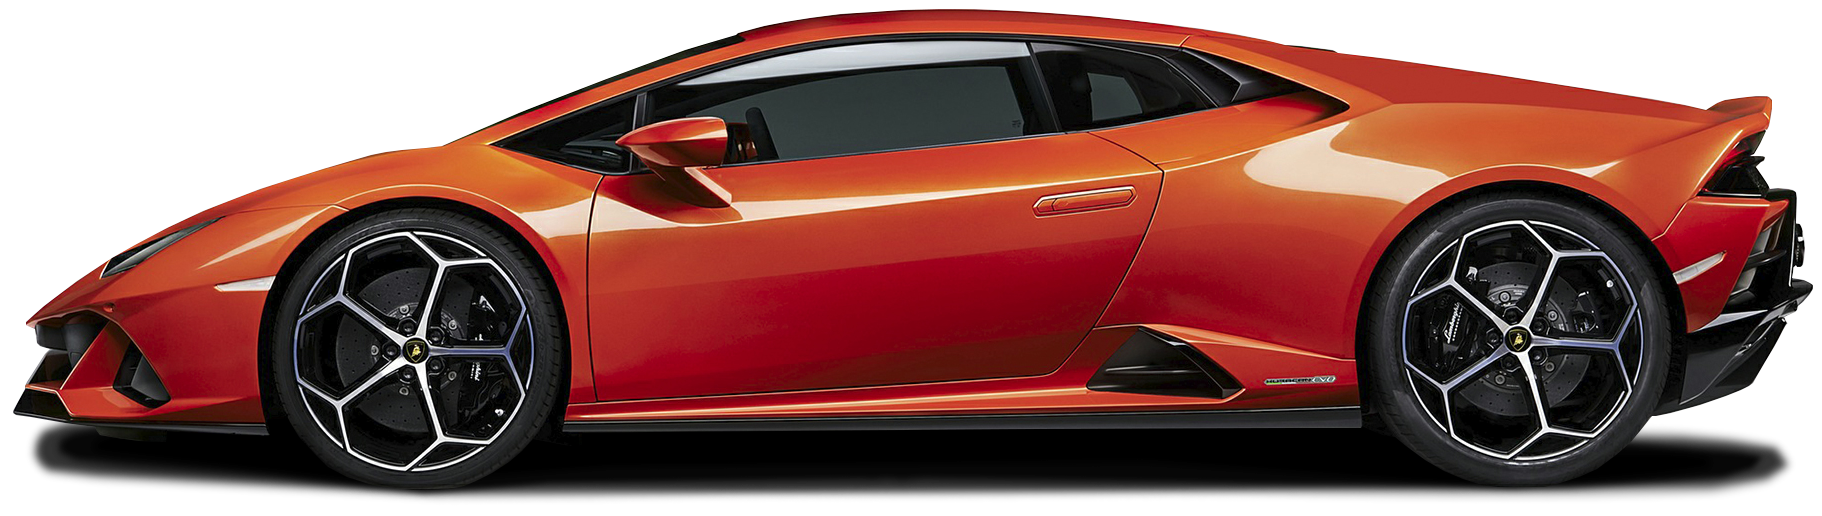 2020 Lamborghini Huracan EVO Coupe 